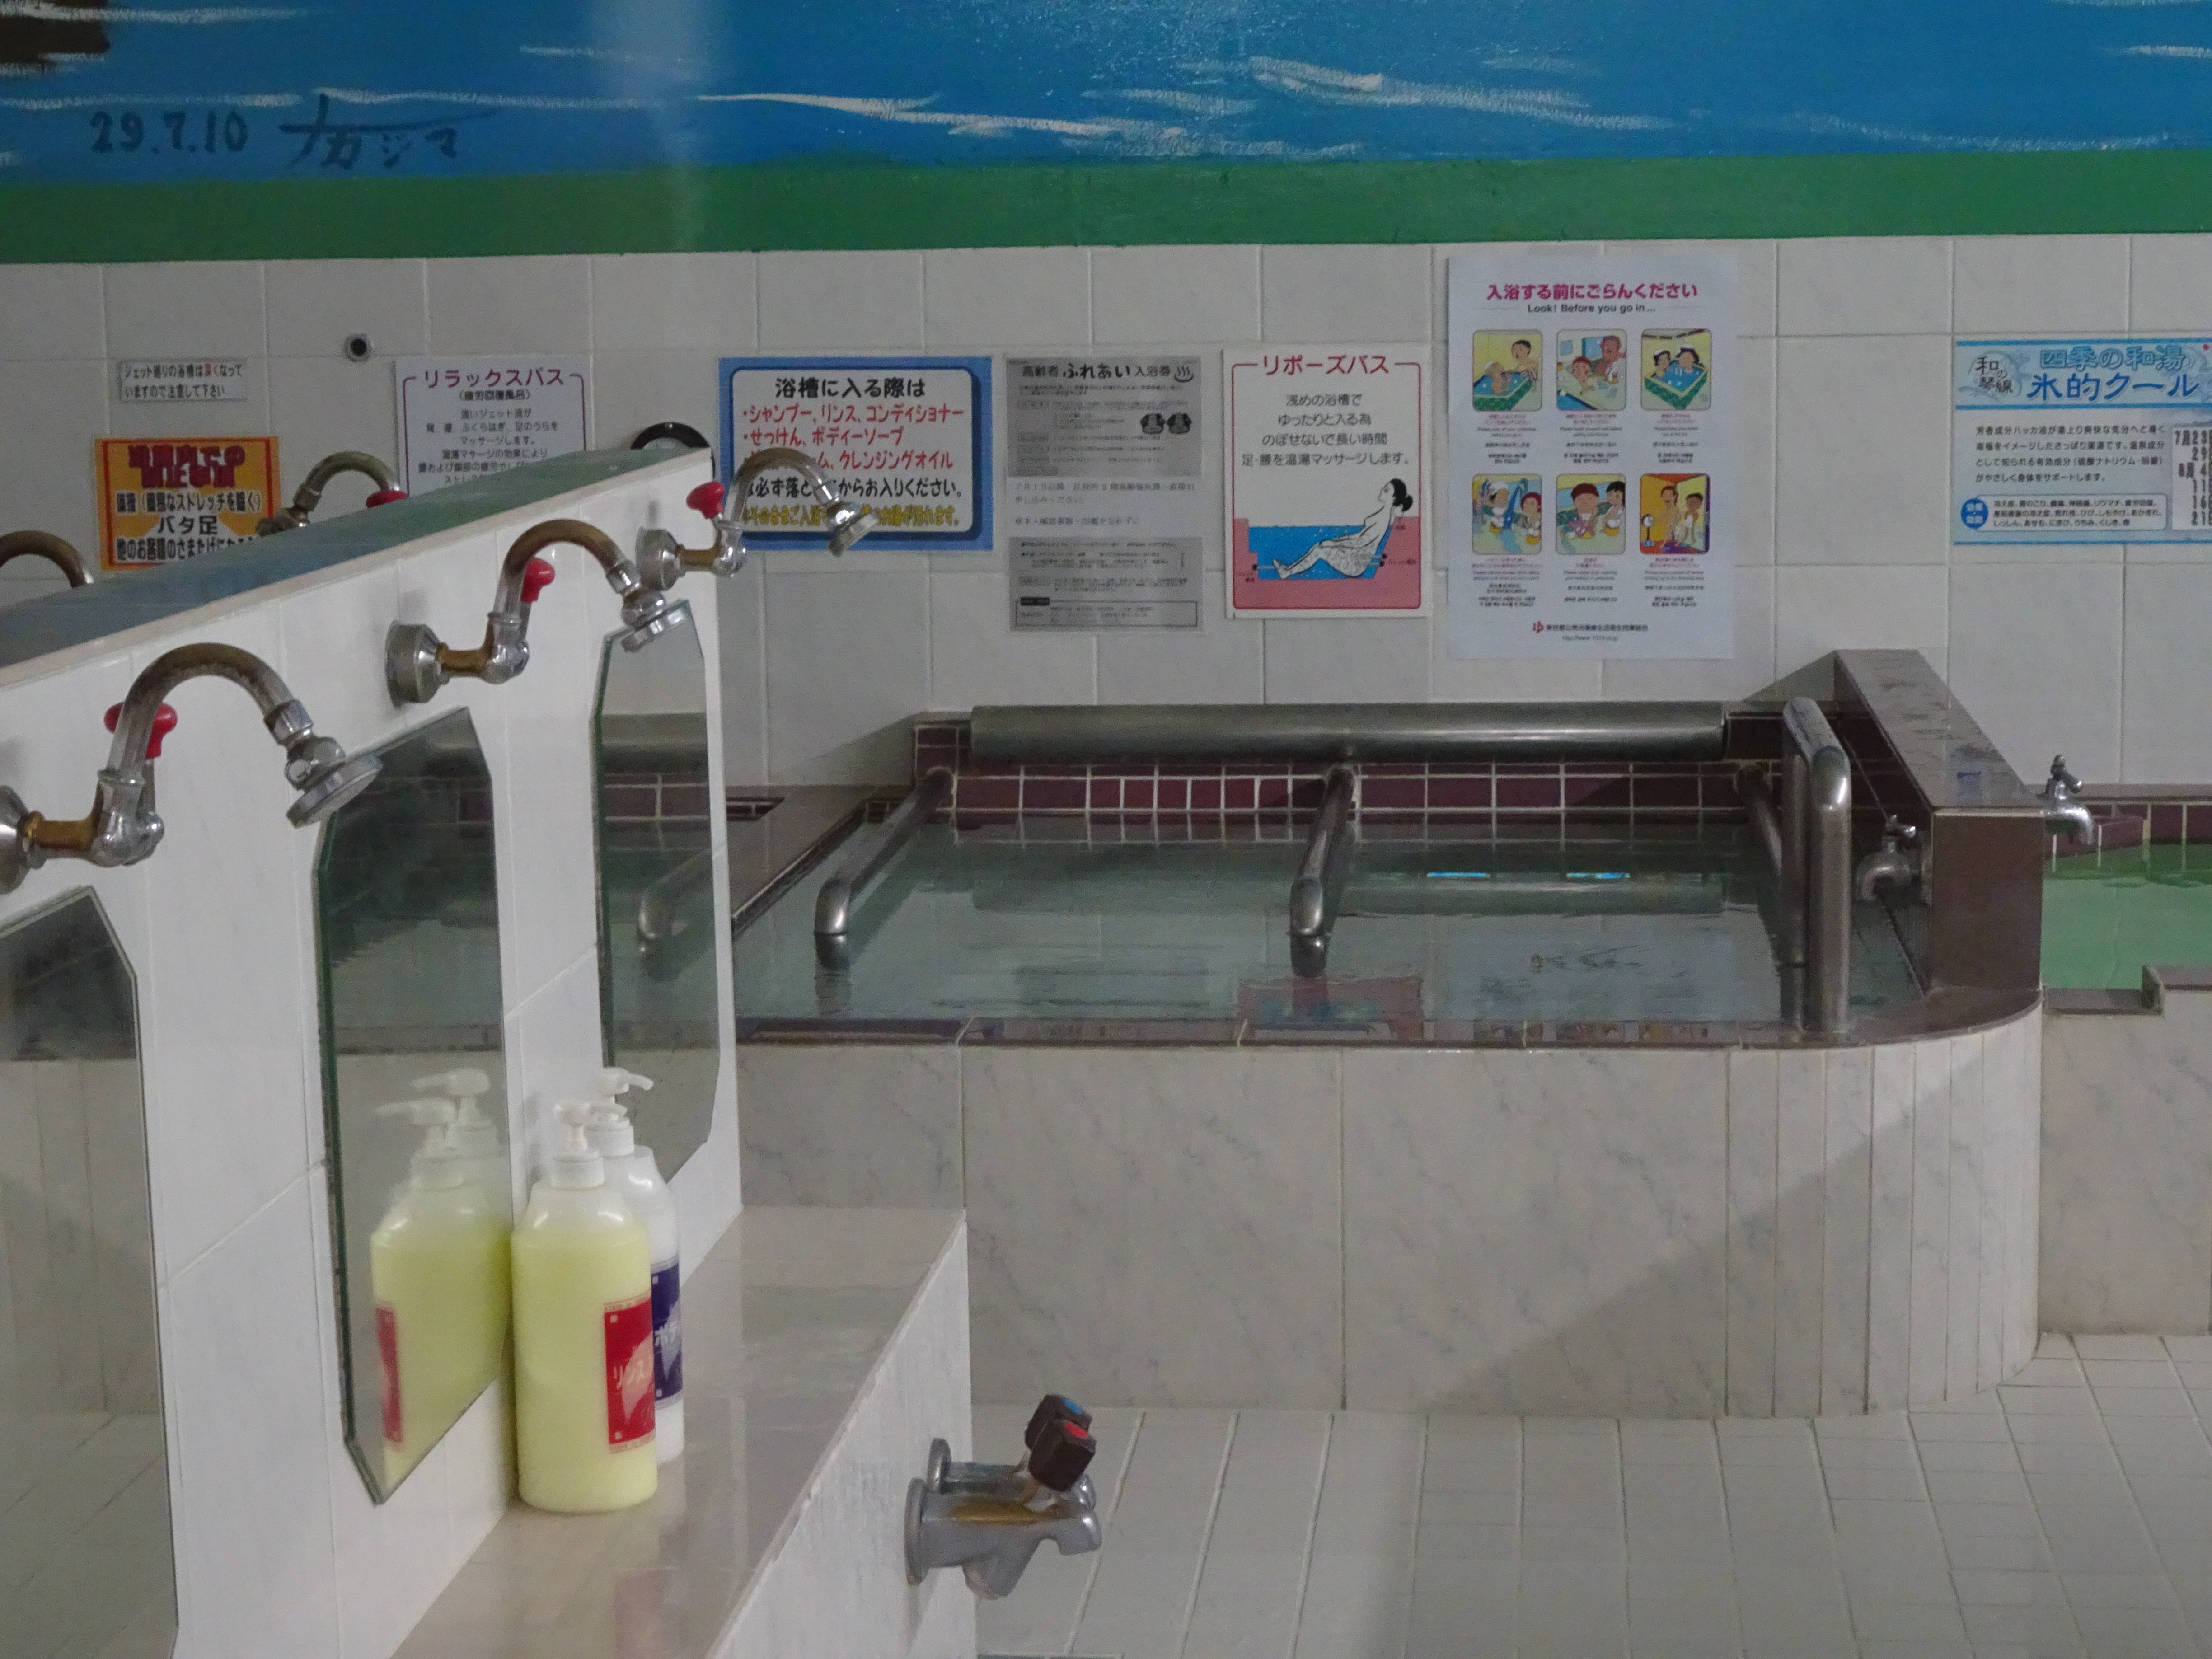 Interior de un baño público japonés